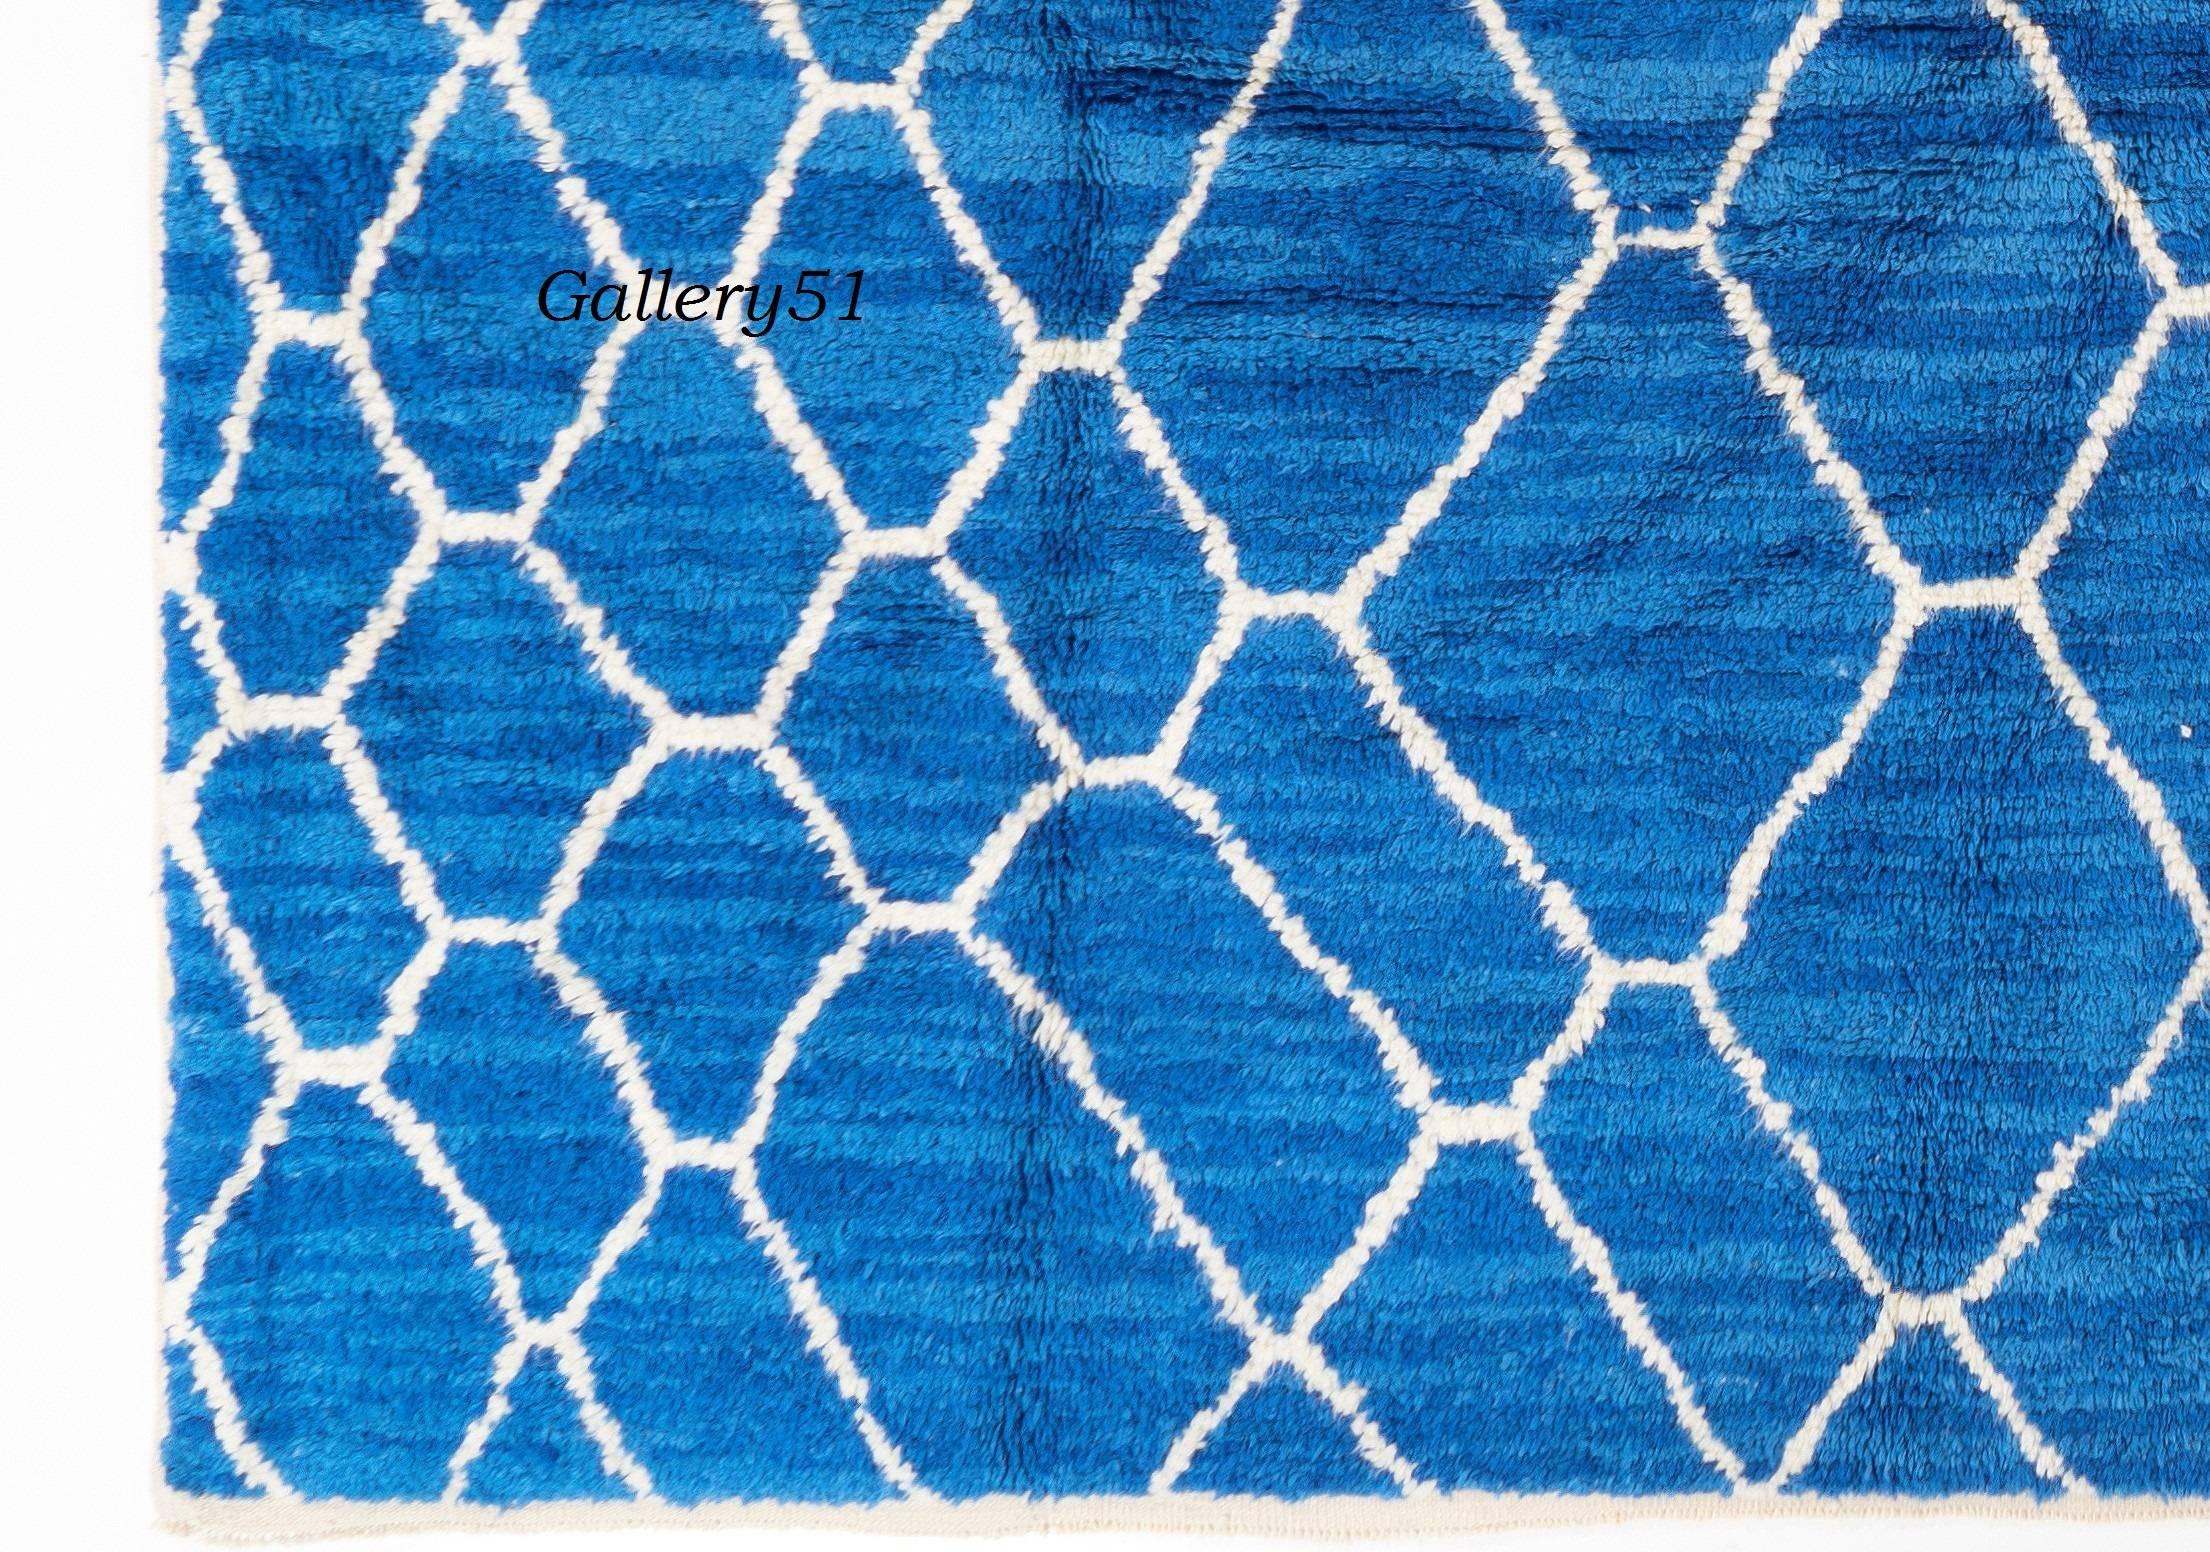 Die leicht dunkleren und helleren Schattierungen des gestreiften indigoblauen Feldes dieses auffälligen zeitgenössischen handgeknüpften Teppichs mit marokkanischem Design erwecken den Eindruck, als würde er tief im Inneren schimmern.
Dieser